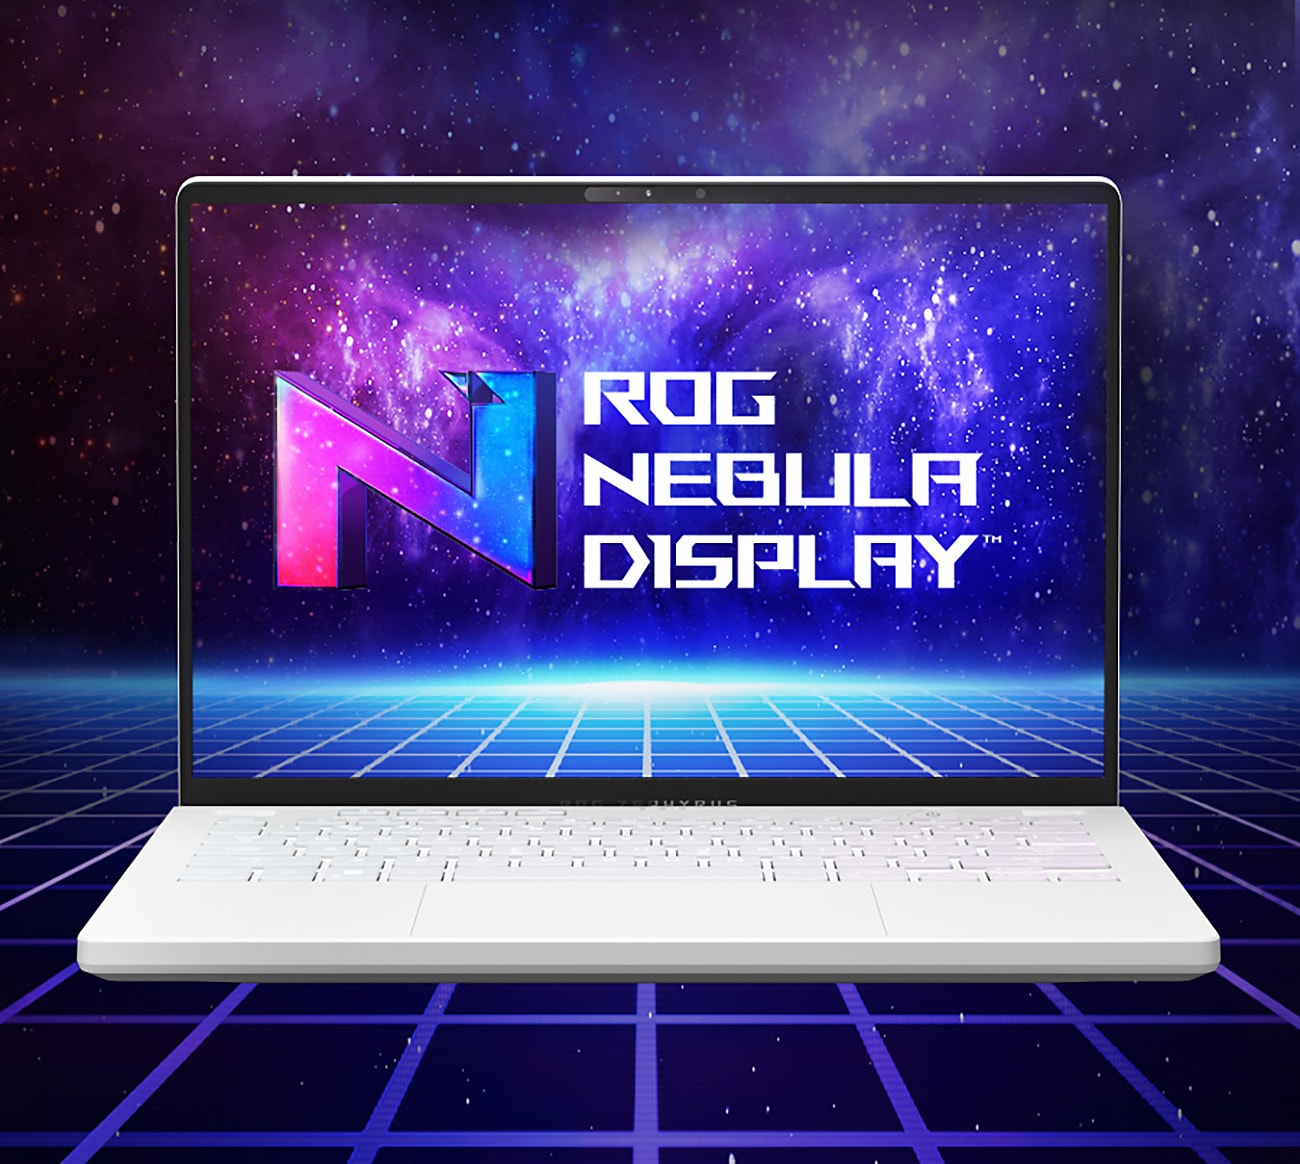 ASUS bærbar gaming-PC med ROG Nebula og Nebula HDR-skjermer